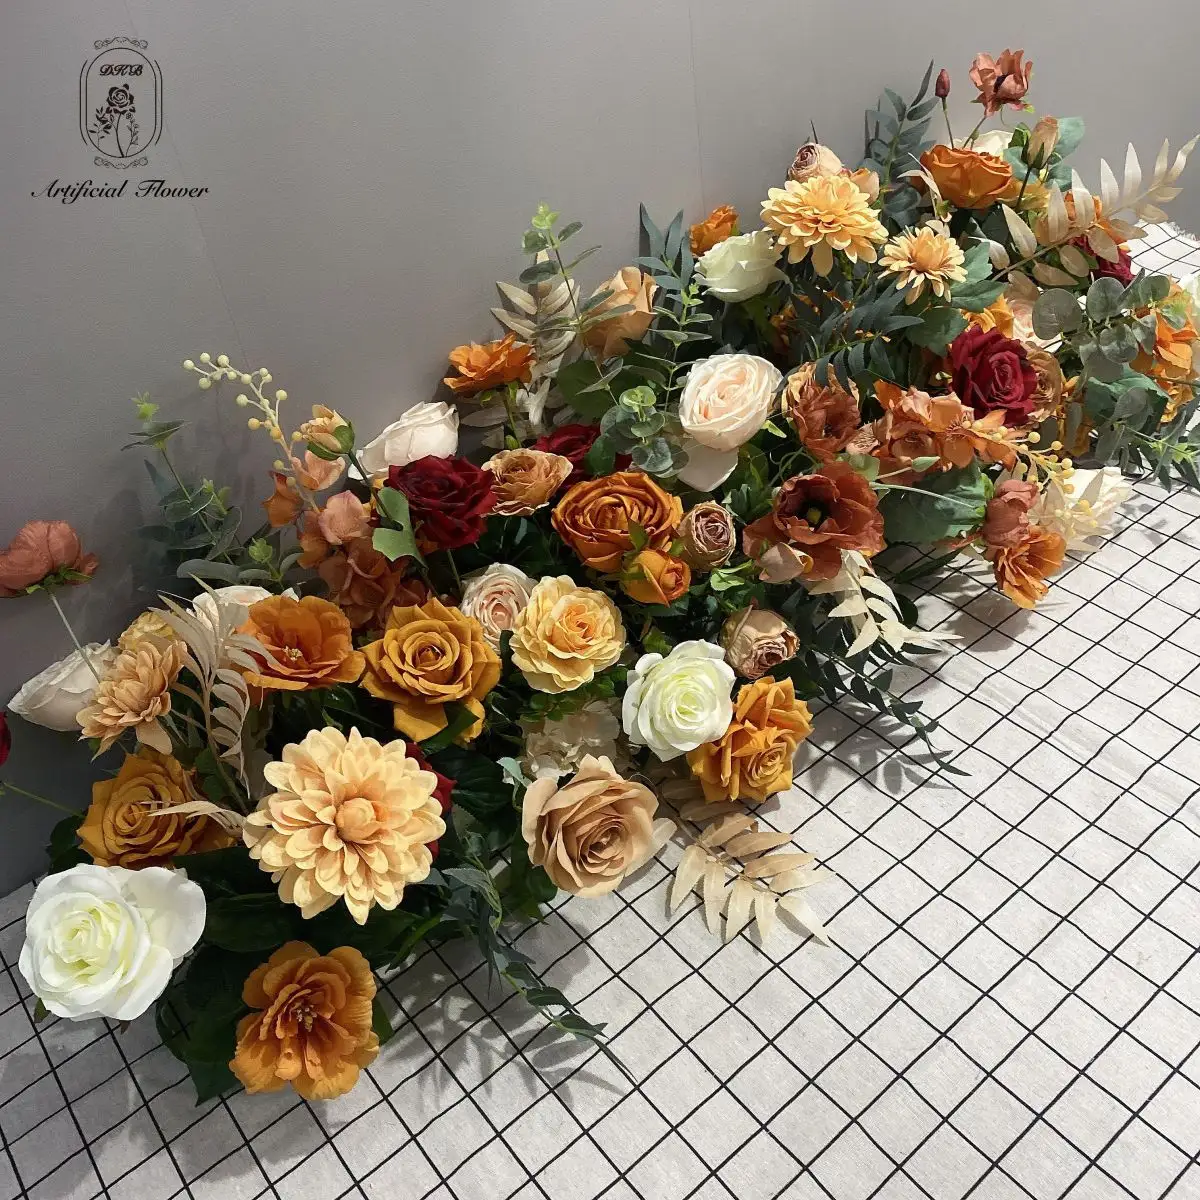 Novo design De Casamento Decoração De Mesa Centerpiece Flor Artificial Row Runner Escada Corredor Floral Garland Corredor Arranjo De Flores